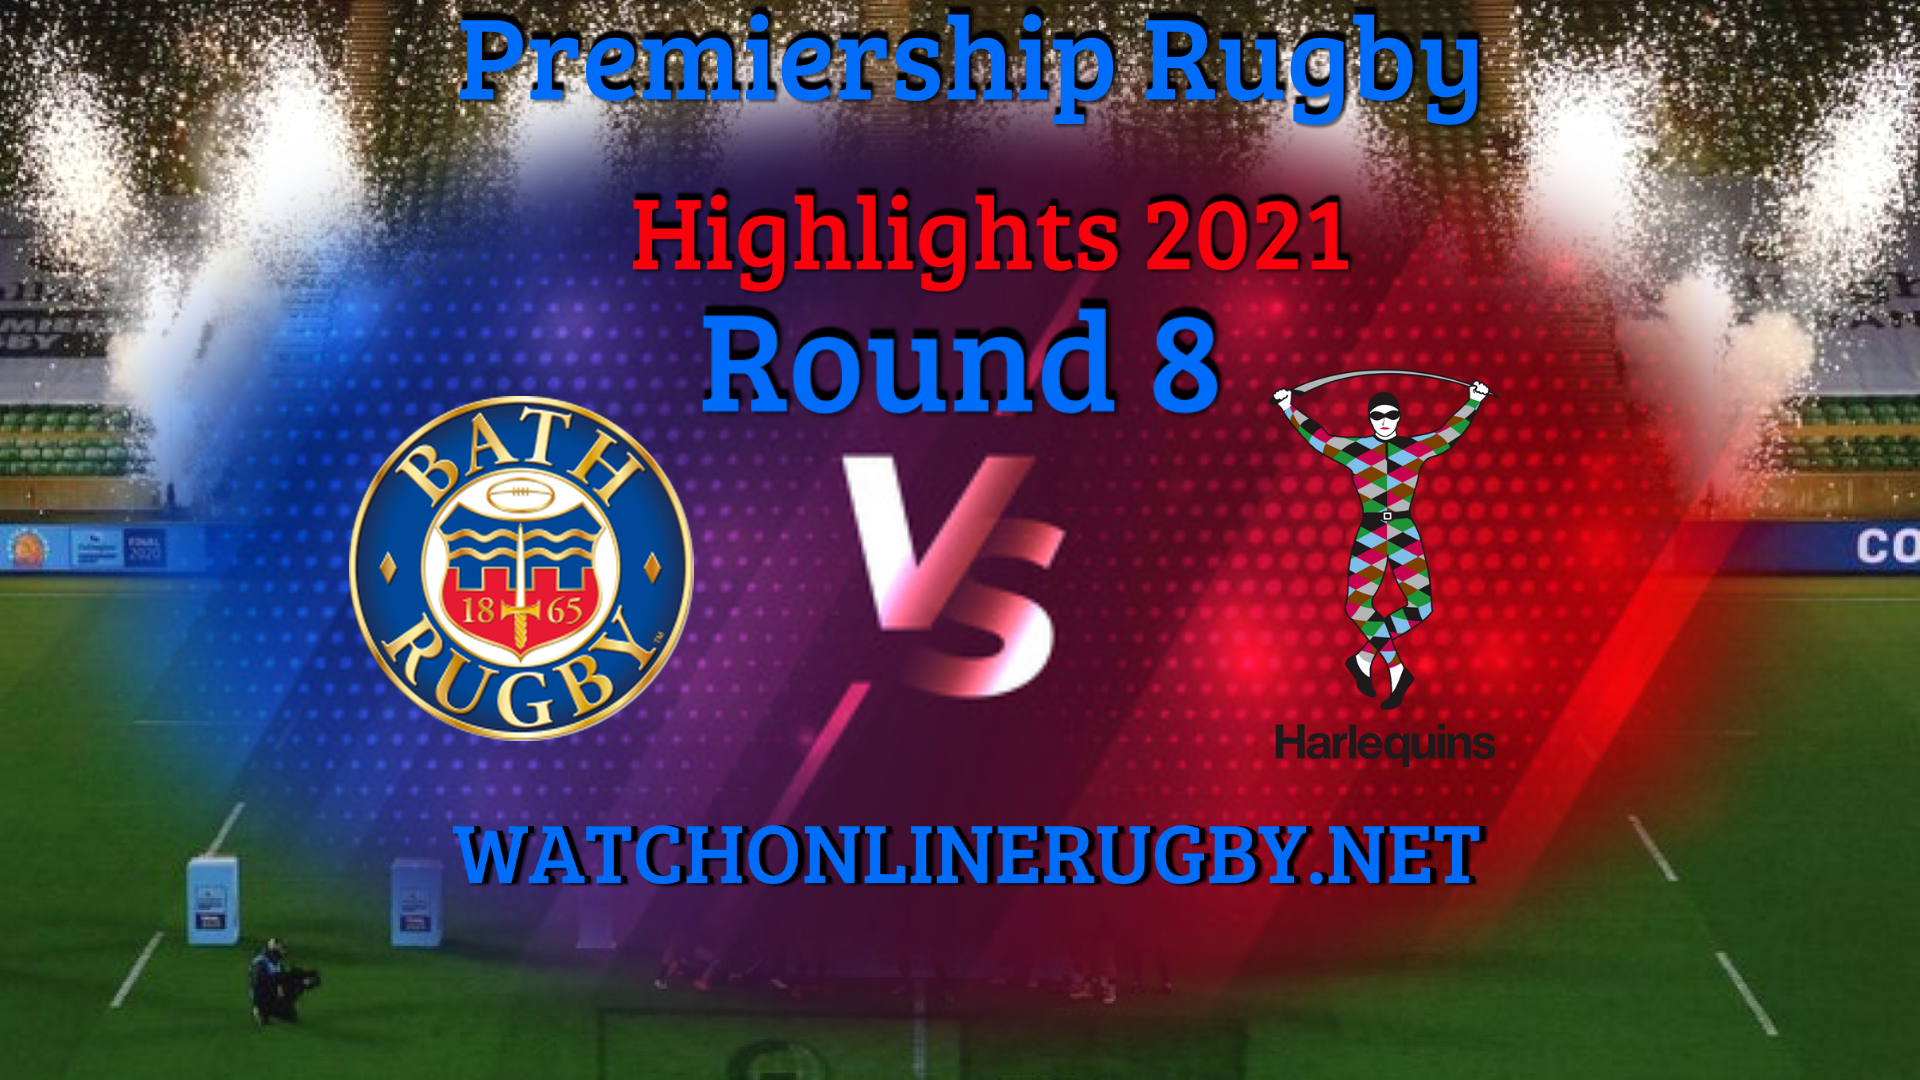 Bath Rugby VS Harlequins Premiership Rugby 2021 RD 8